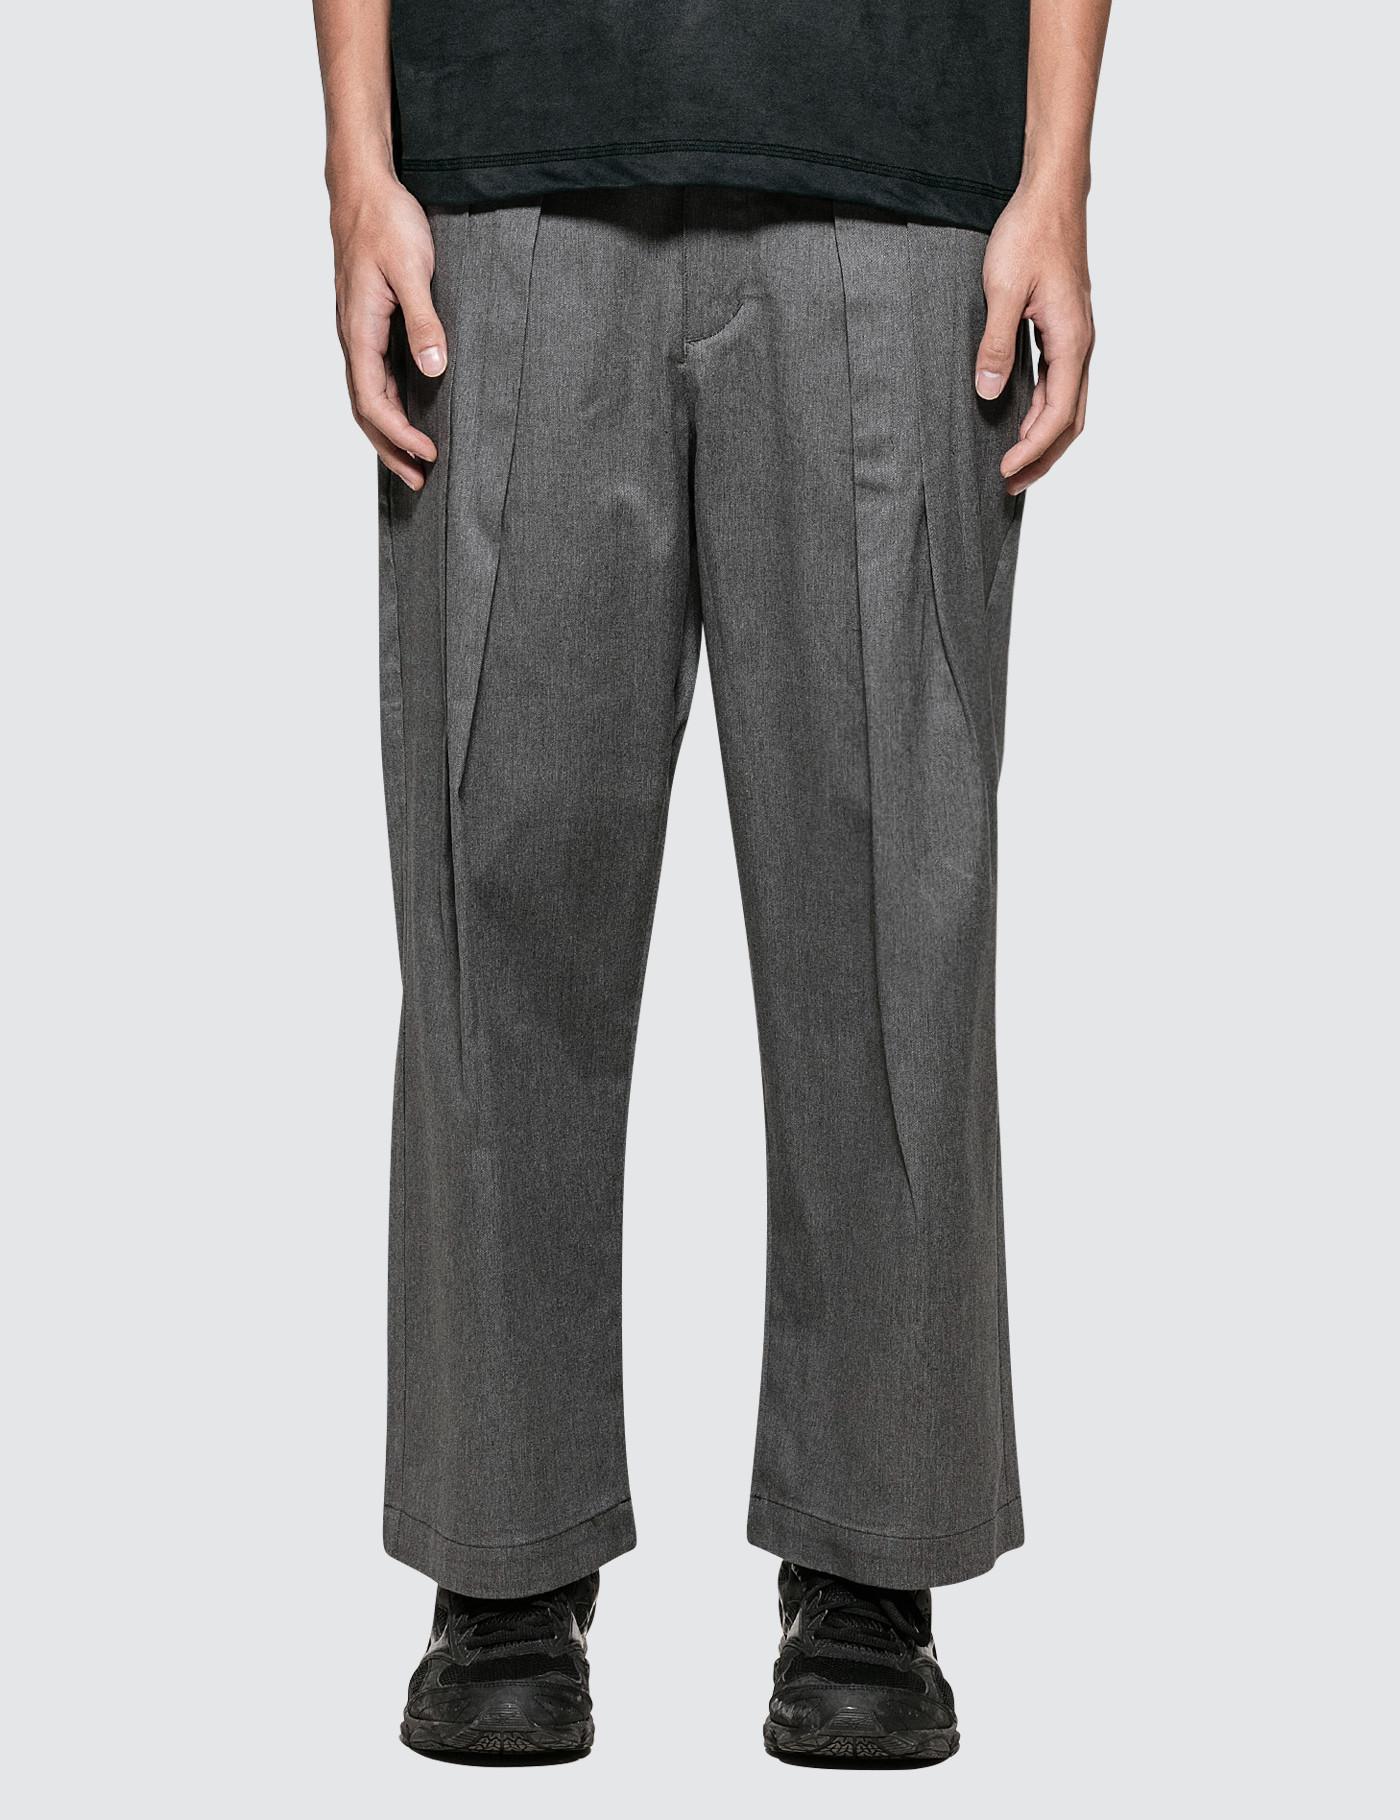 Sasquatchfabrix Cotton High Waist Work Pants in Grey (Gray) for Men - Lyst